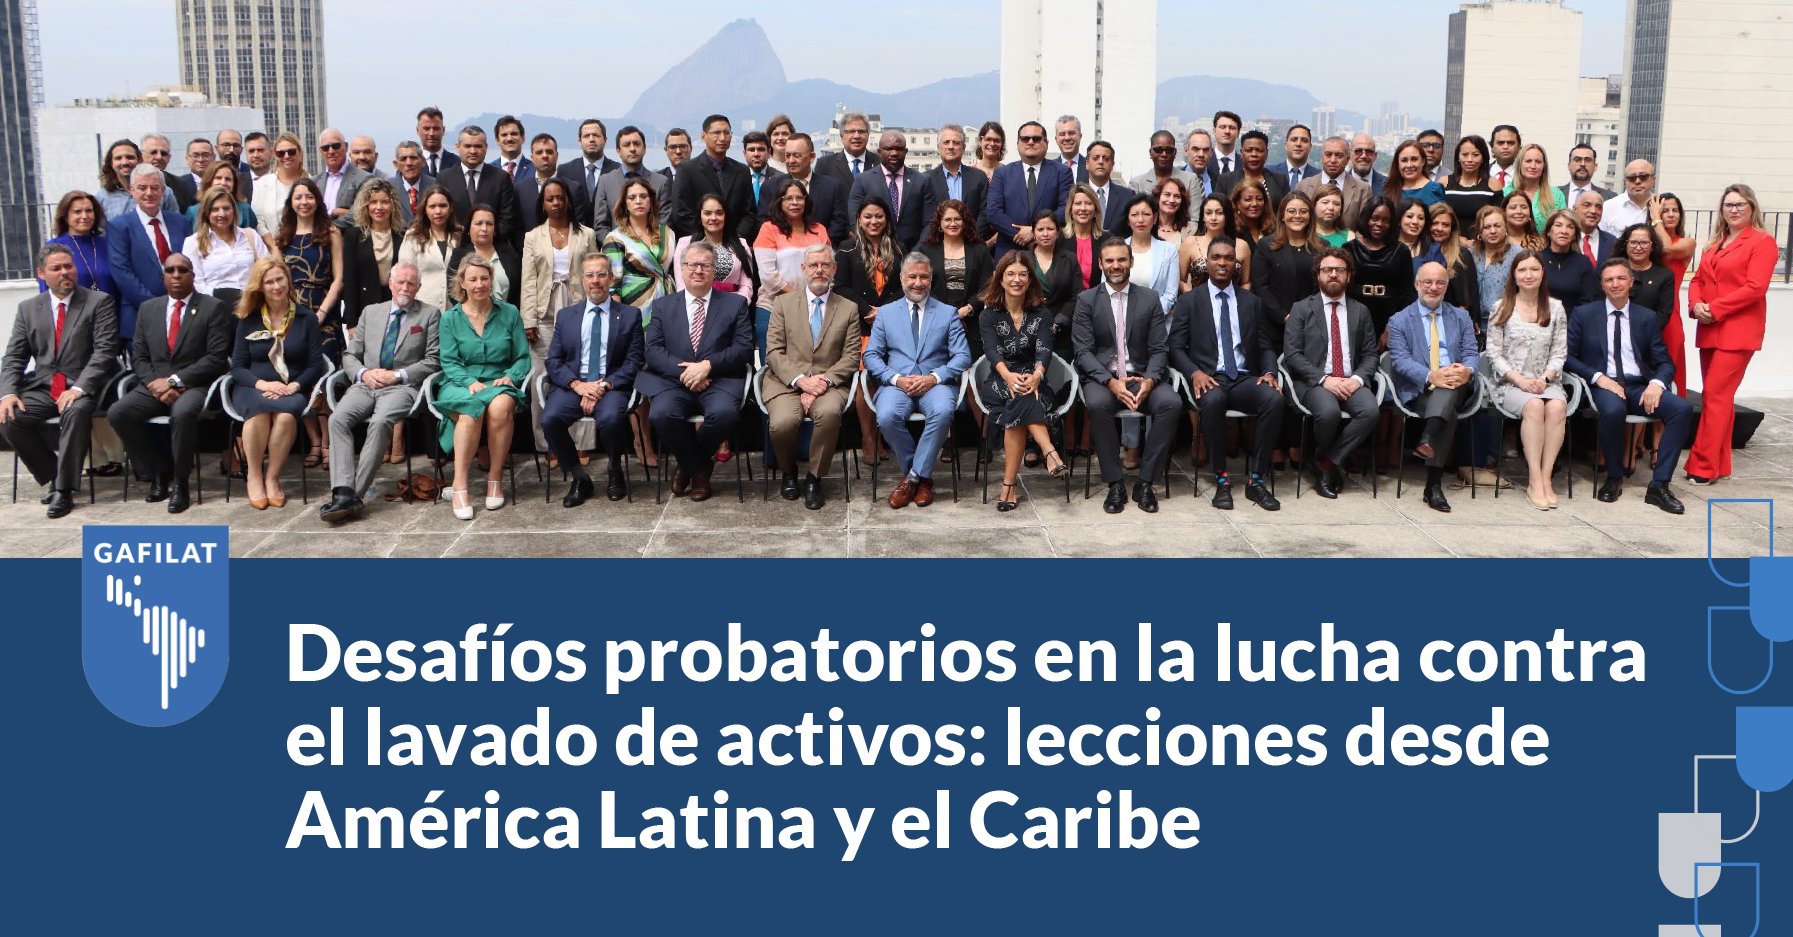 Desafíos probatorios en la lucha contra el lavado de activos: lecciones desde América Latina y el Caribe